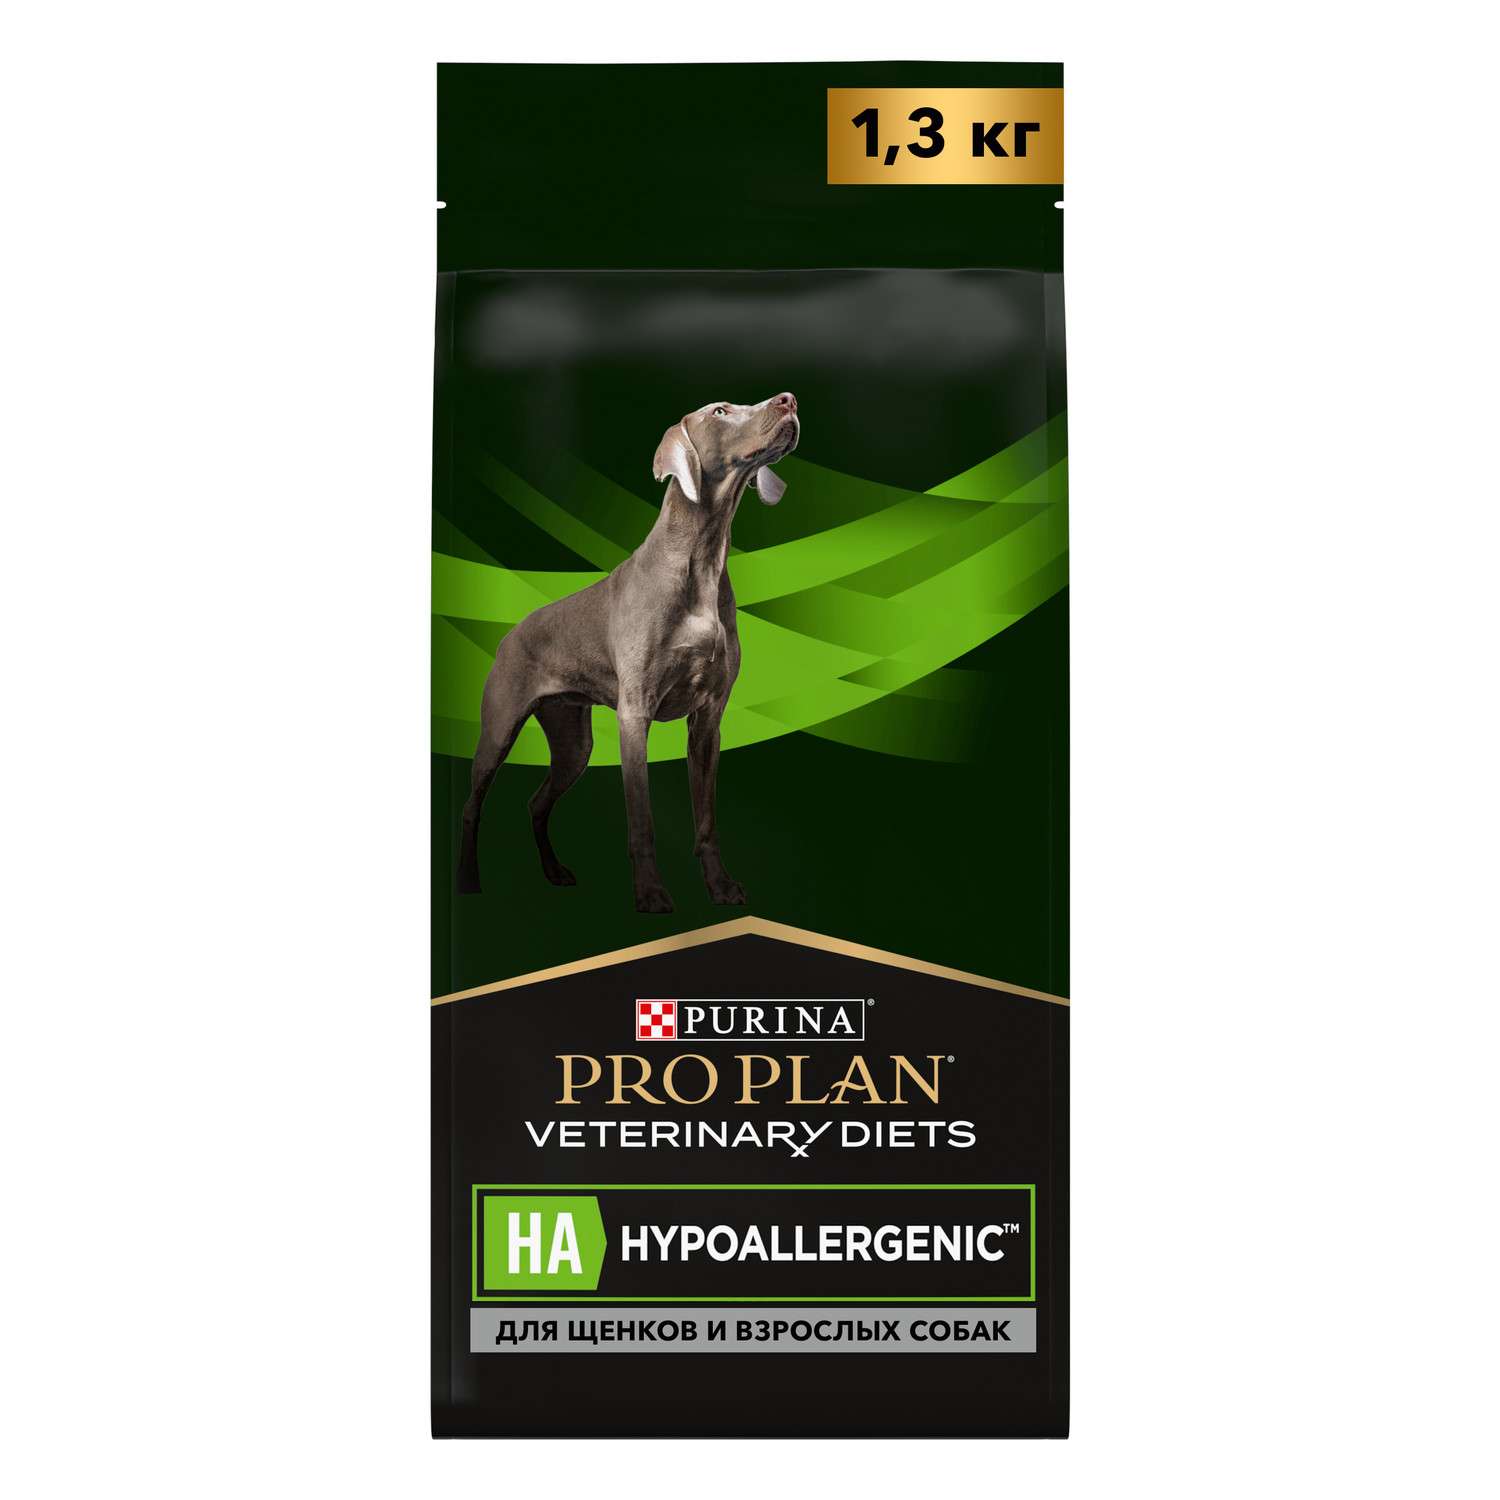 Корм для щенков и собак Purina Pro Plan Veterinary diets HA Hypoallergenic для снижения пищевой непереносимости ингредиентов и питательных веществ сухой 1.3кг - фото 1